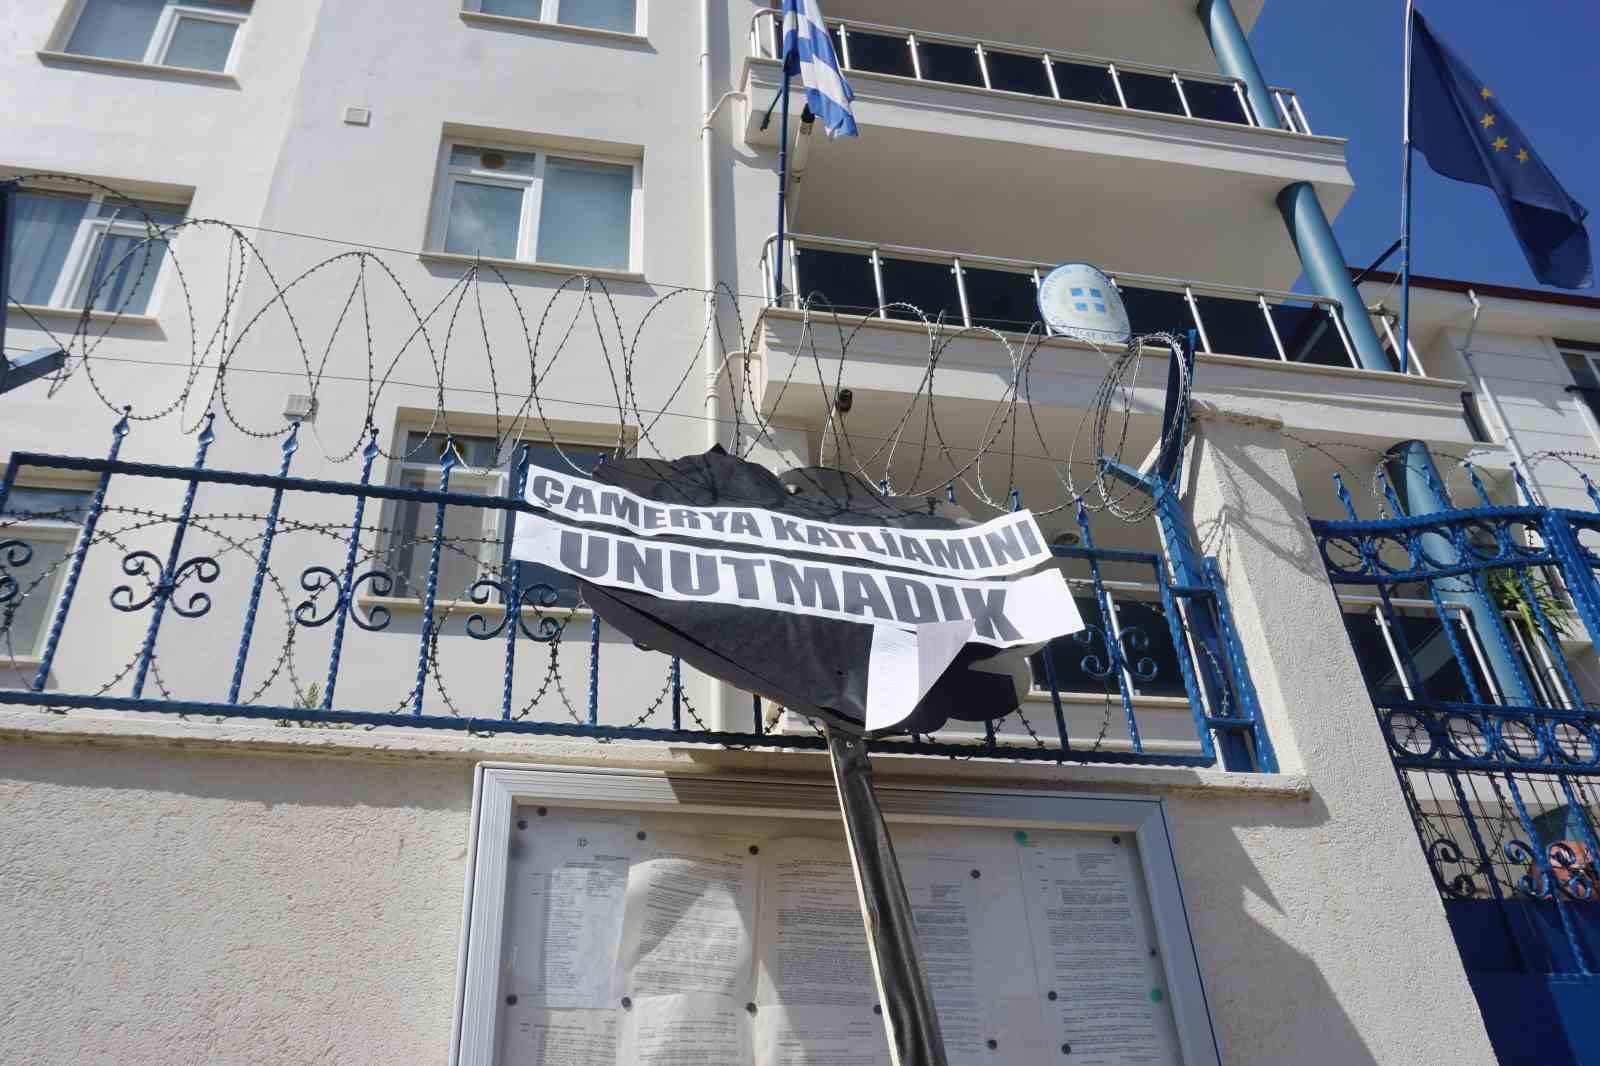 Çamerya katliamı unutulmadı: Yunanistan’ın Edirne Konsolosluğu önüne siyah çelenk bırakıldı
